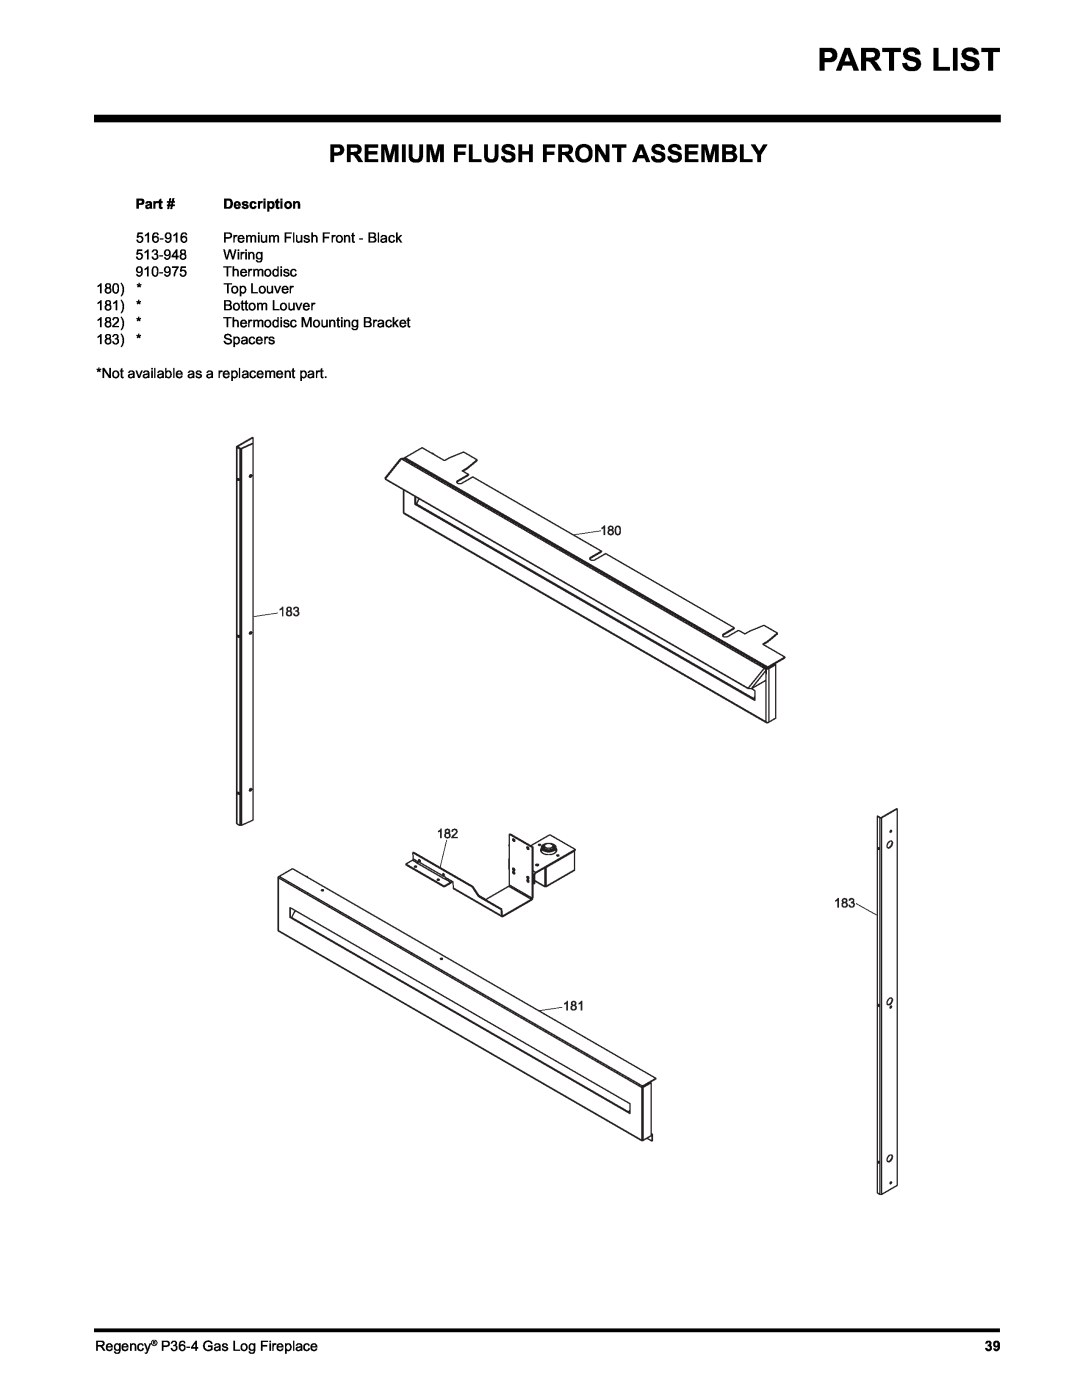 Regency Wraps P36-NG4, P36-LPG4 manual Premium Flush Front Assembly, Description 